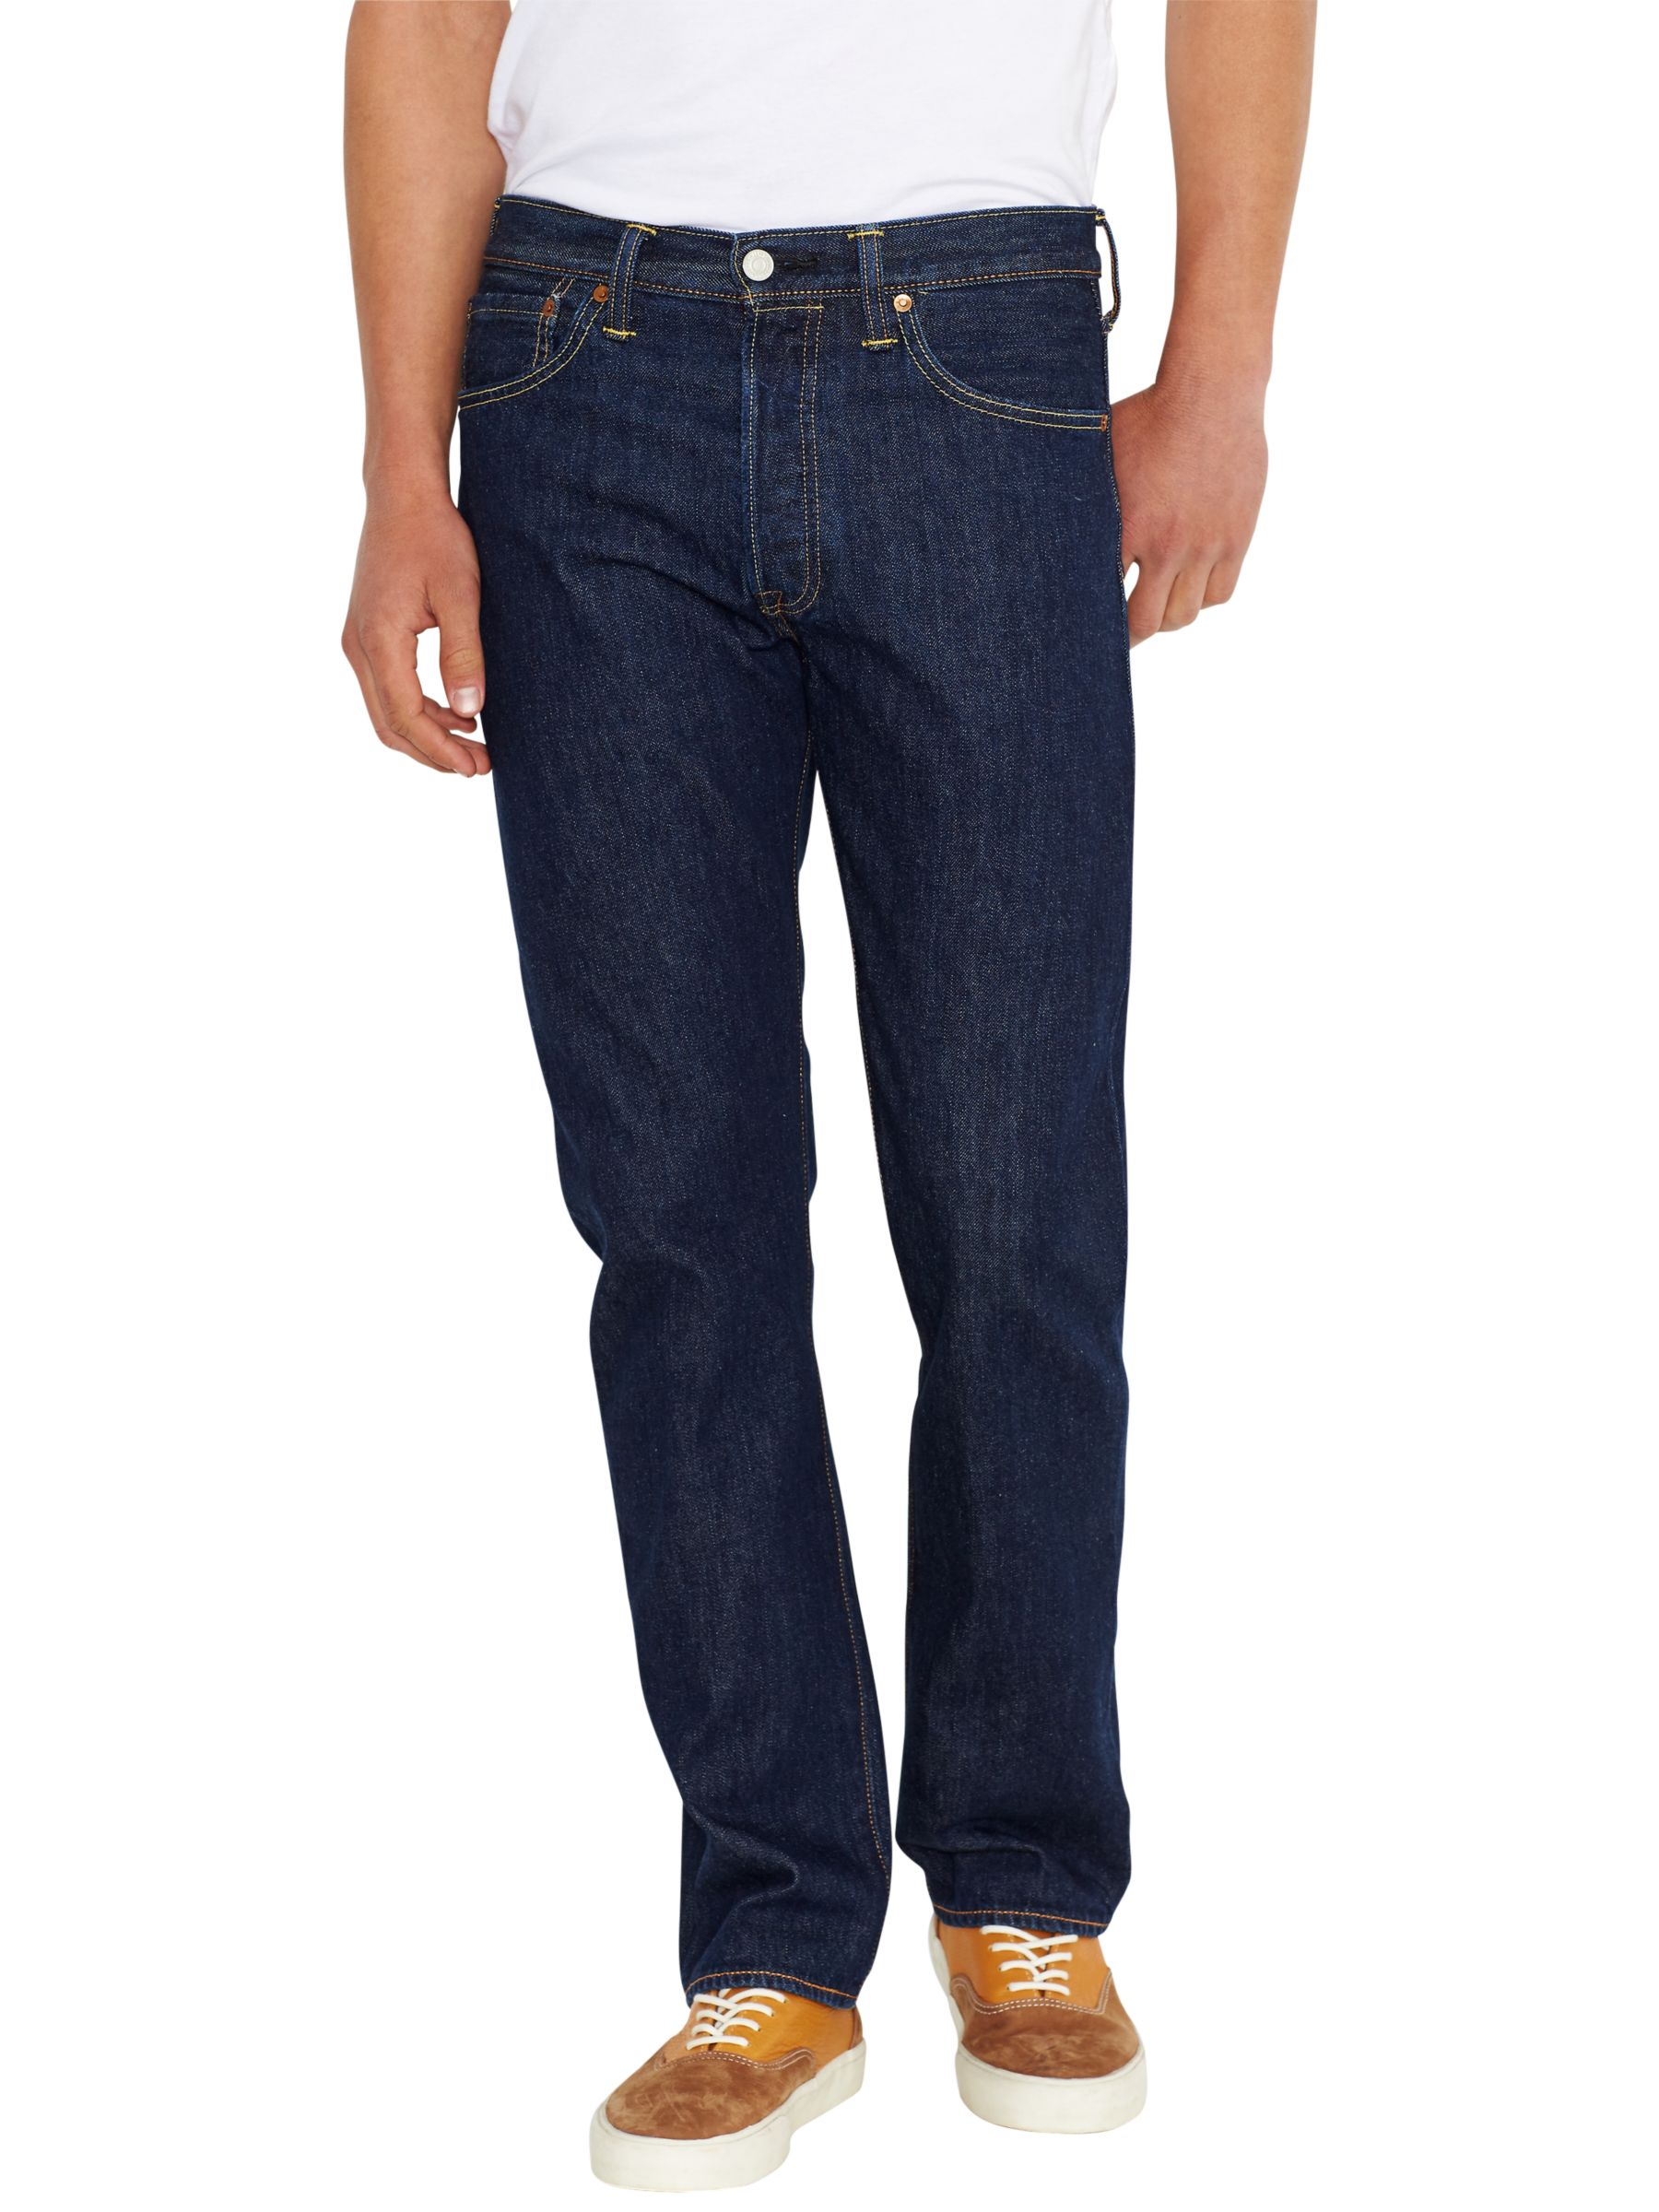 jeans 501 original